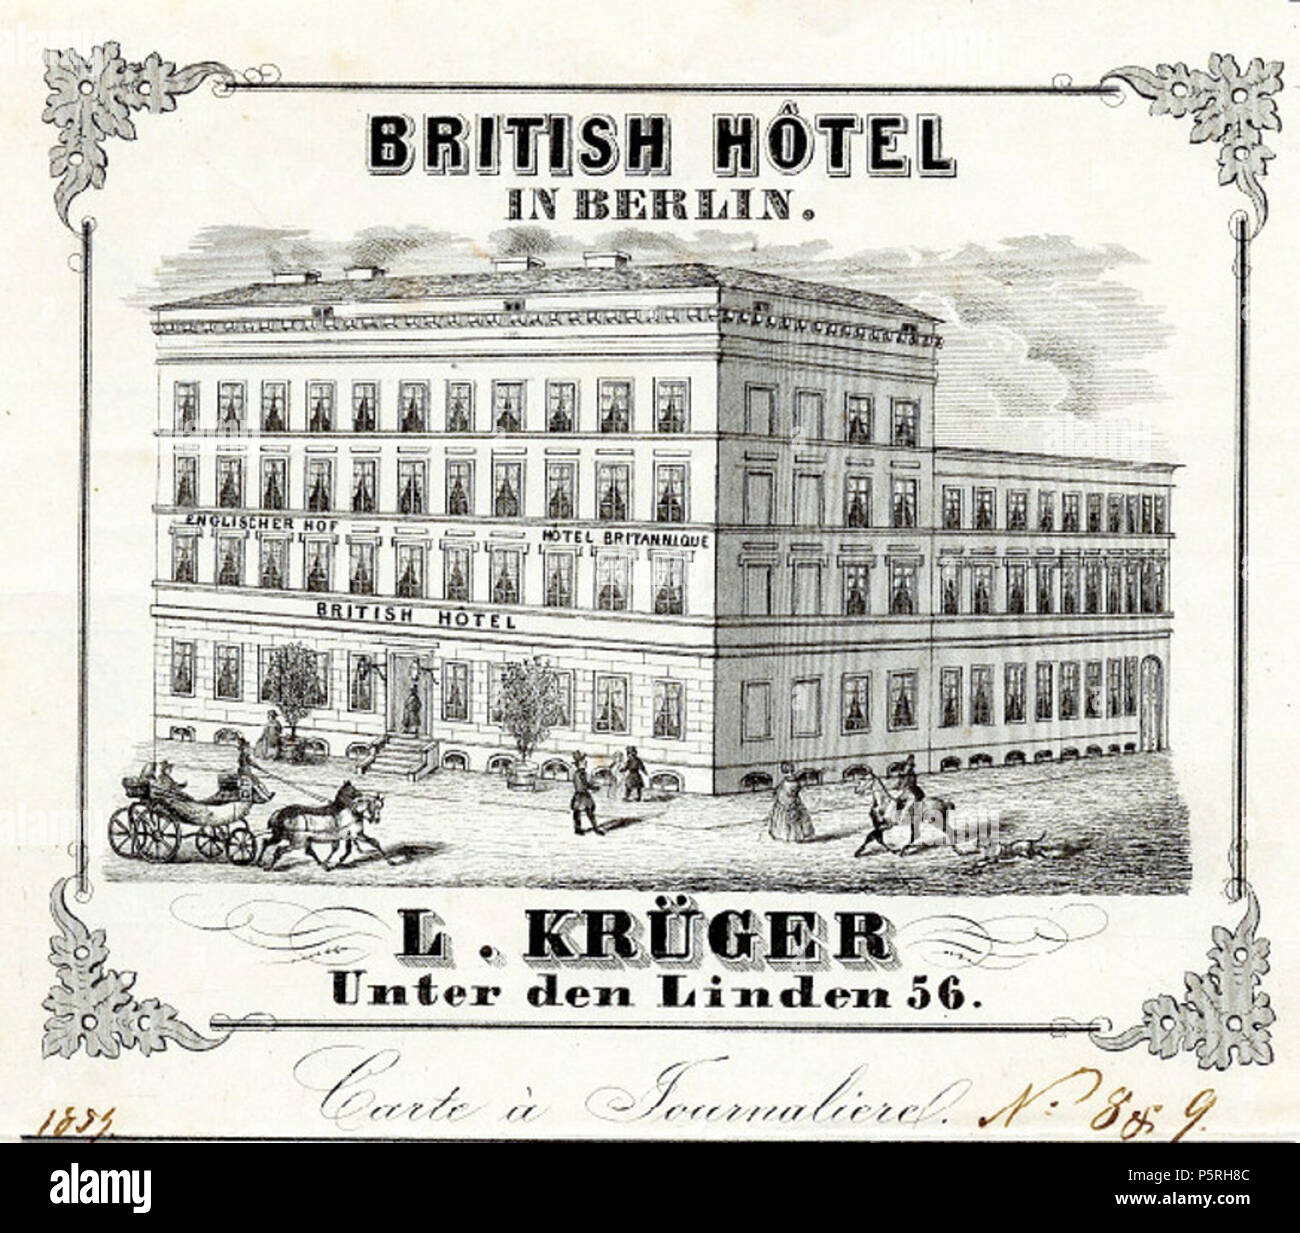 N/A. Deutsch: Bild von der Tageskarte von 1854 des Hotels (Carte un Journalierel) . 1854. Britisch Hotel 236 British Hotel Tageskarte Foto Stock